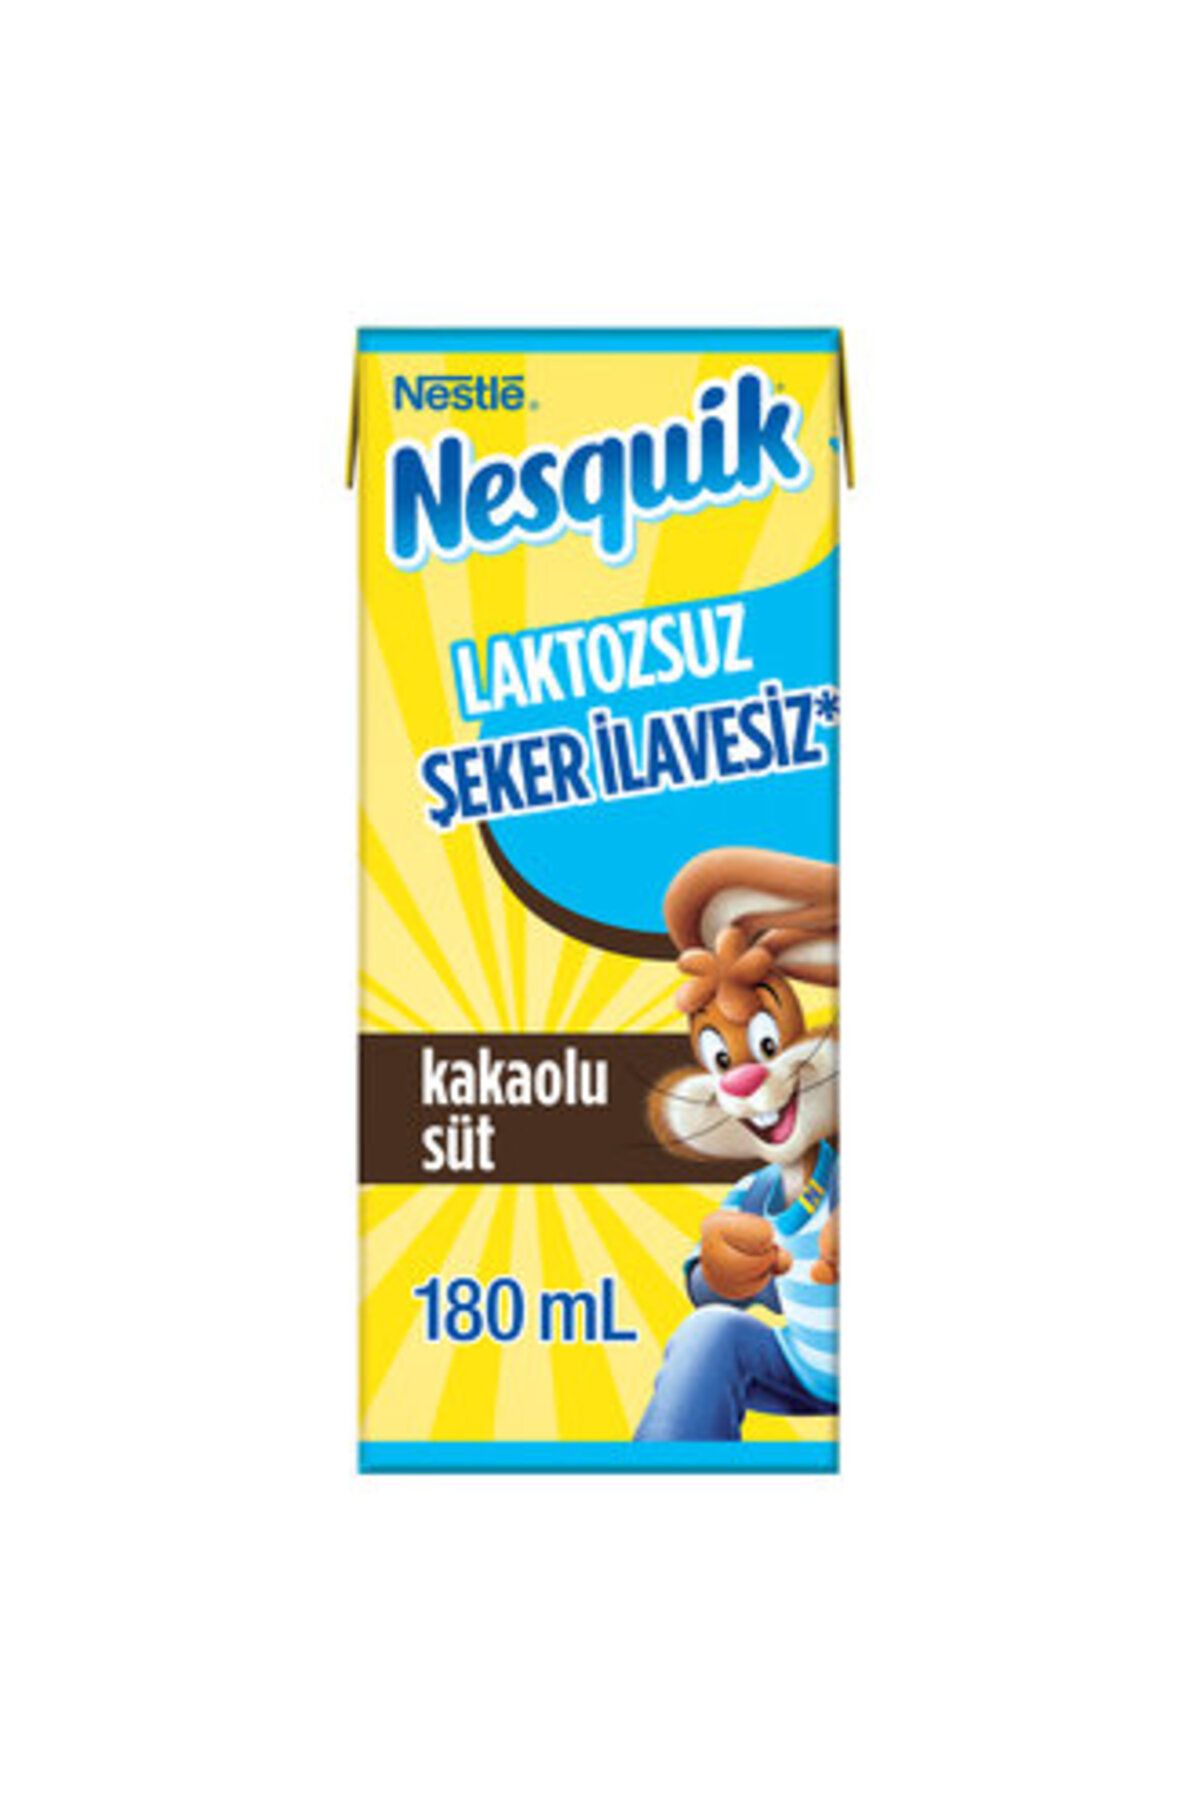 Nestle Nesquik Laktozsuz & Şeker İlavesiz Kakaolu Süt 180 Ml ( 5 ADET )